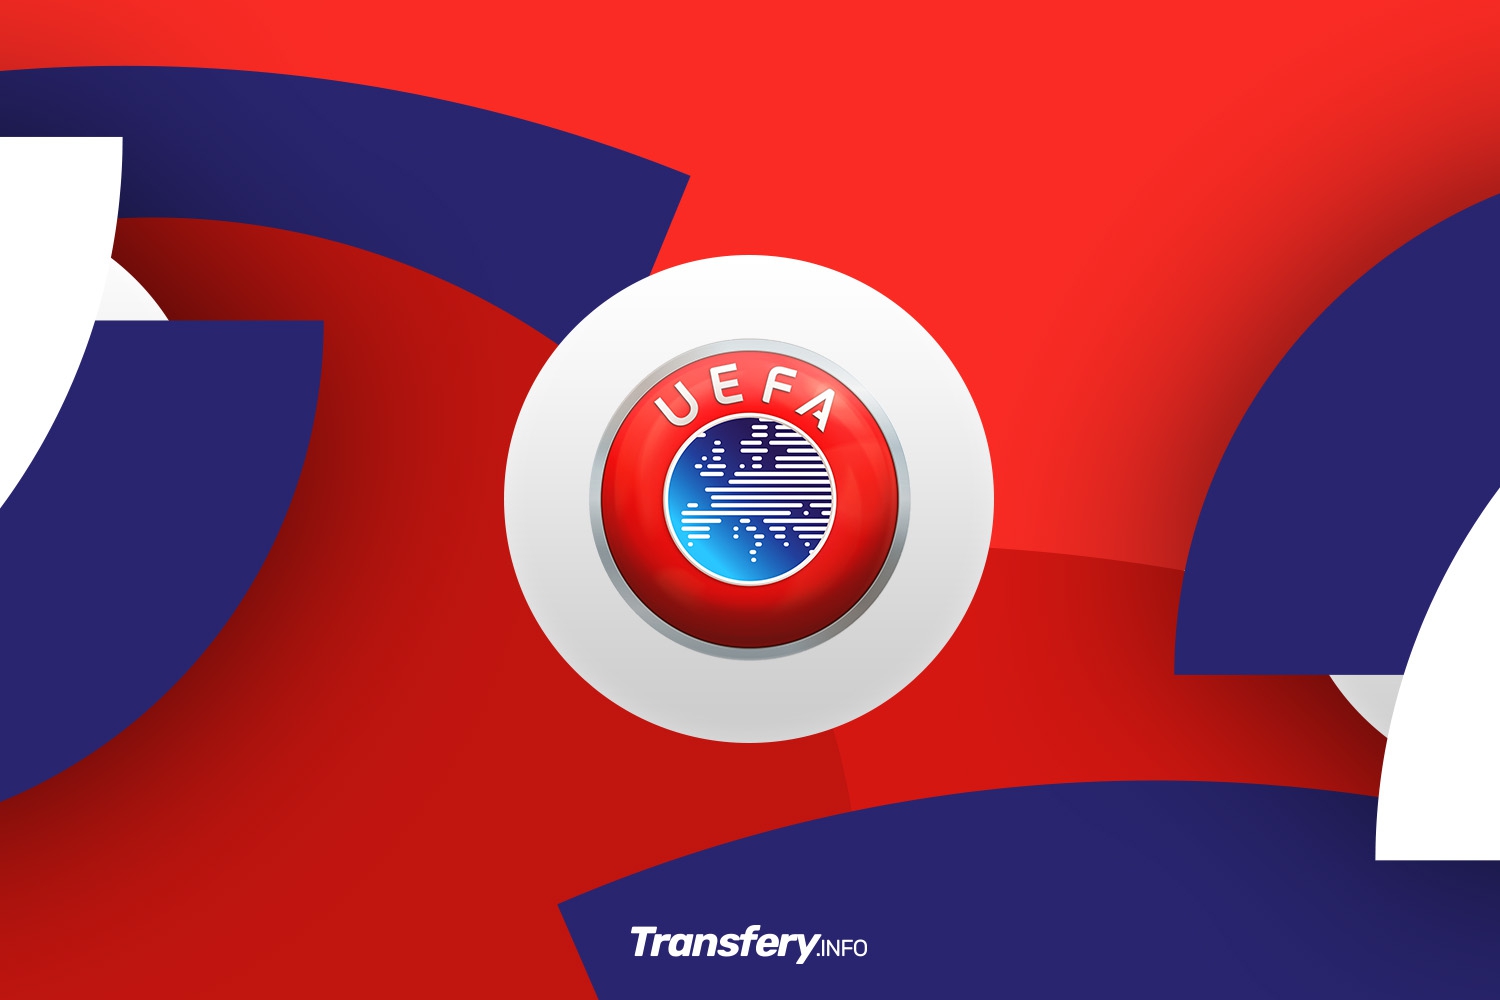 OFICJALNIE: UEFA bezlitosna. Cztery kluby bez licencji na grę w europejskich pucharach